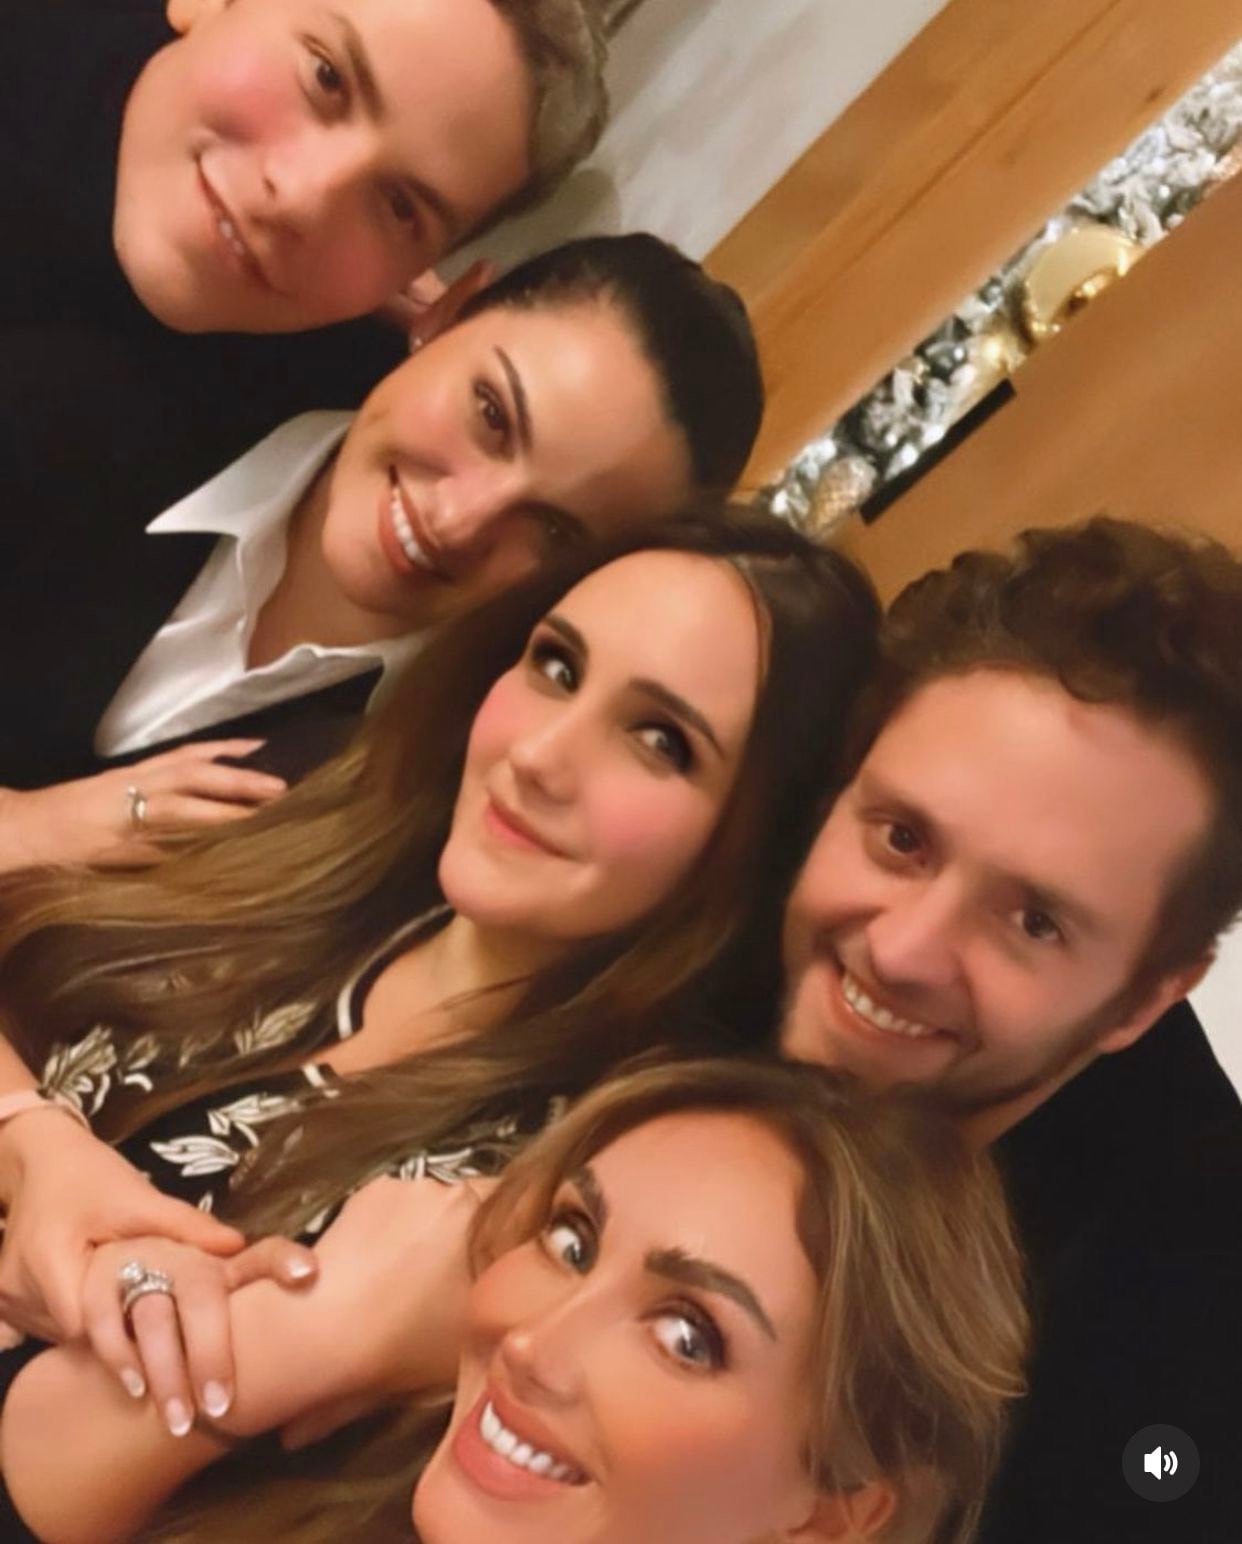 Maite Perroni, Anahí, Christian Chávez, Dulce María y Christopher Uckerman compartieron fotografías juntos. (Foto: Instagram / @christianchavezreal)